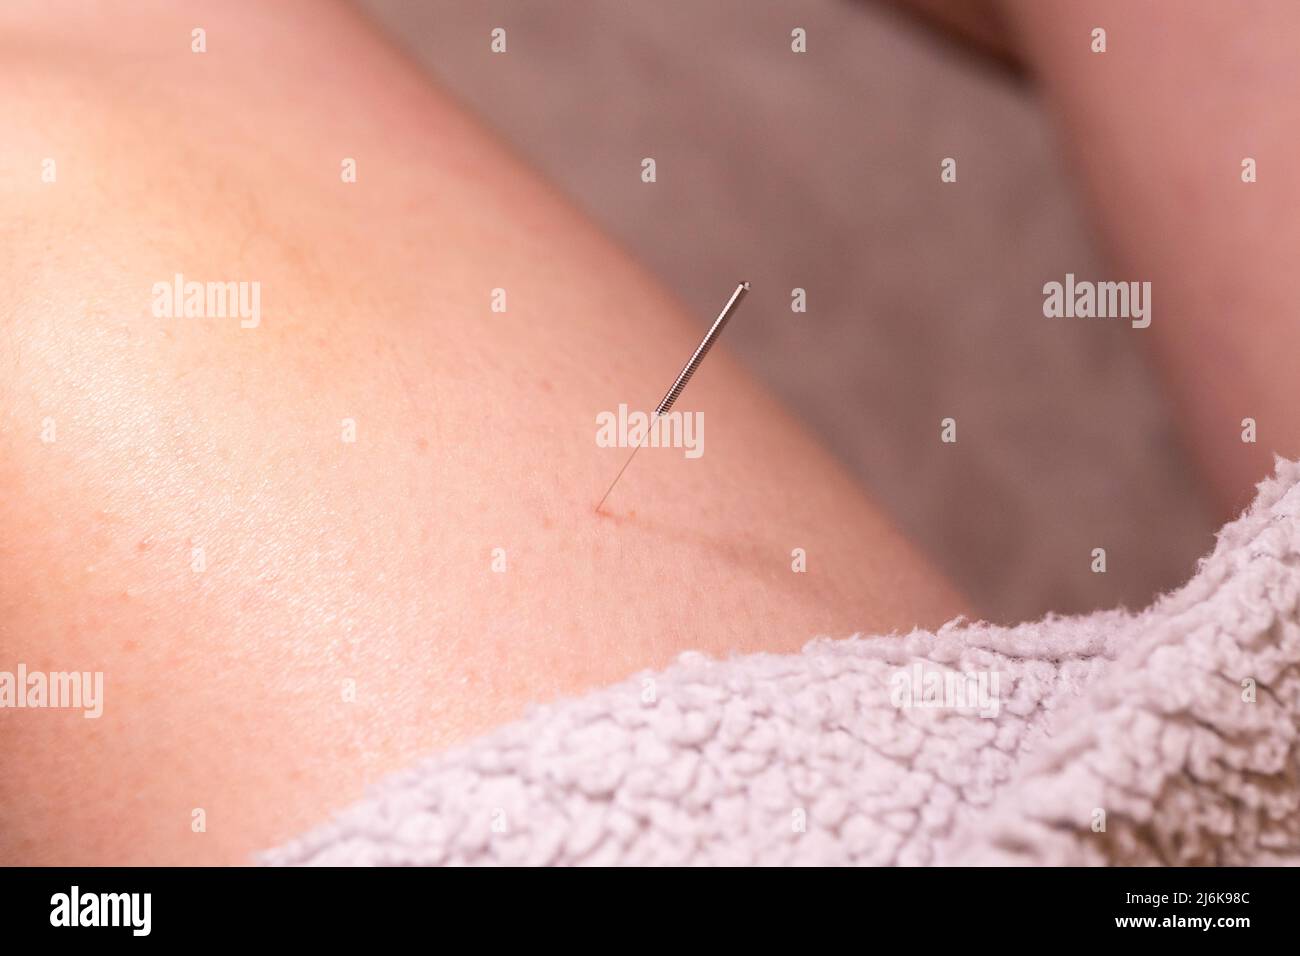 Un portrait d'une fine aiguille d'acupuncture placée sur la partie supérieure de la jambe, mis en place par un acupuncteur. Ce traitement de médecine alternative est utilisé pour l'héa Banque D'Images